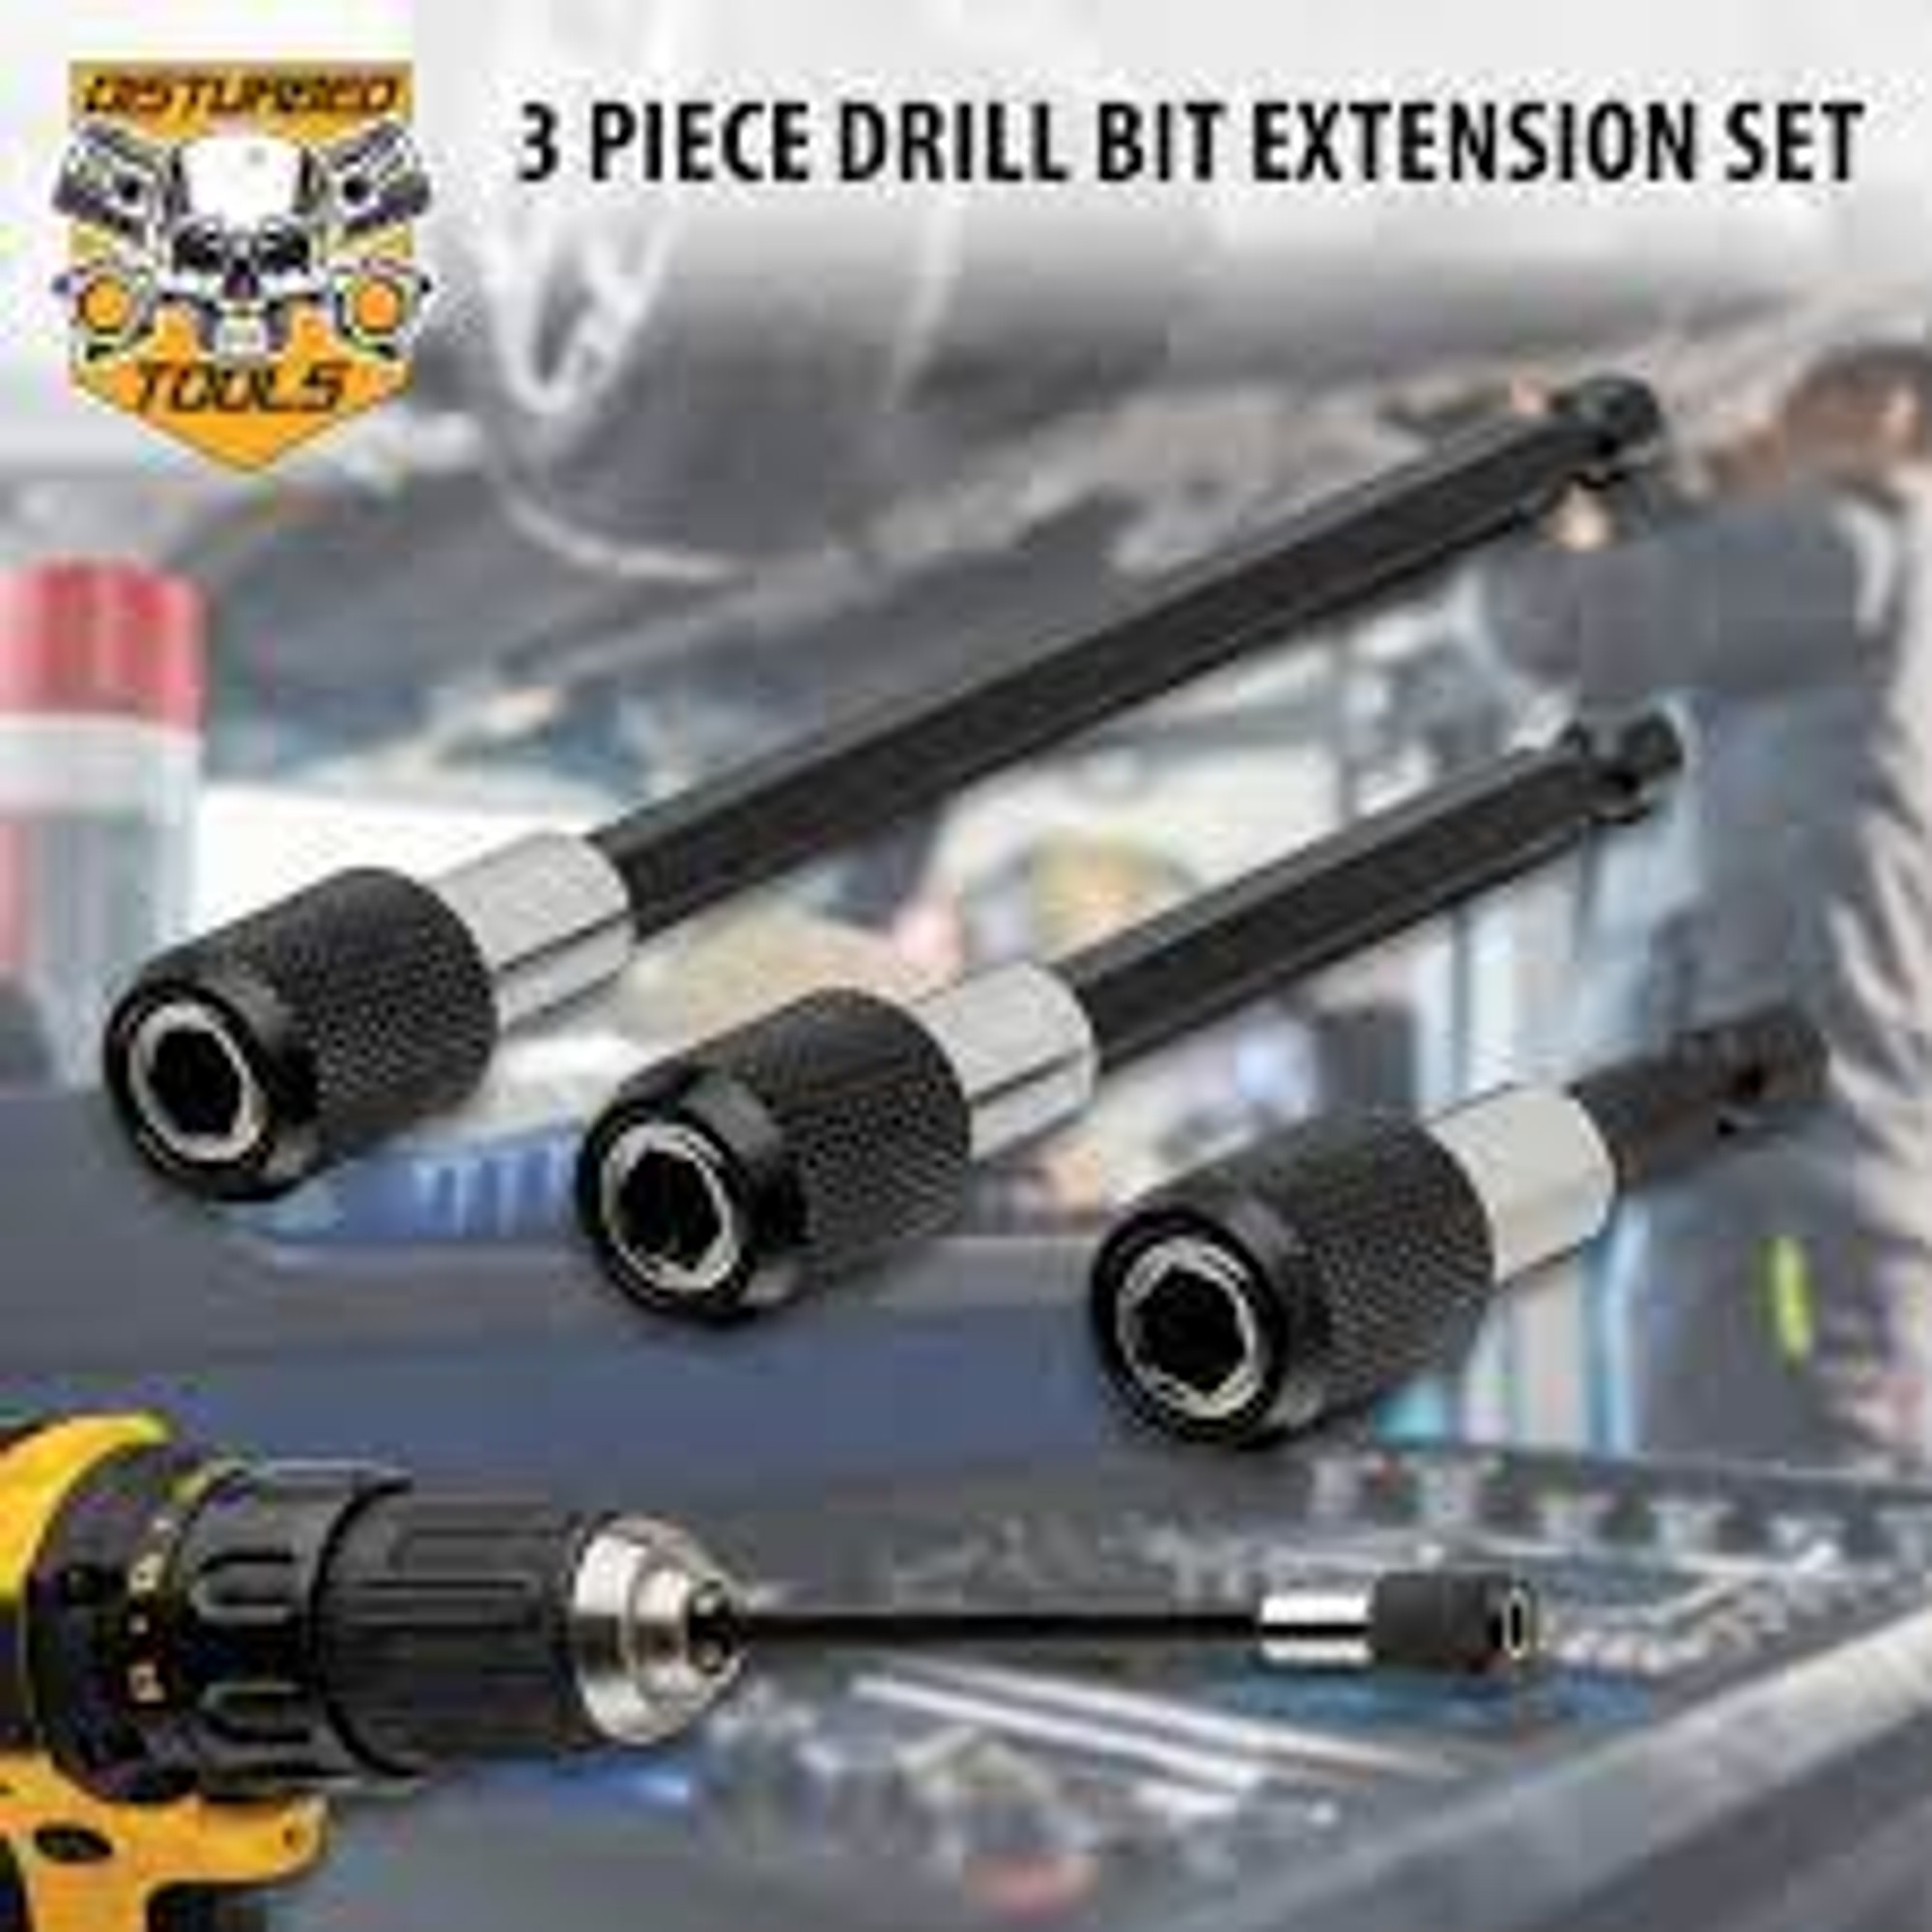 Disturbed Tools Three-Piece Drill Bit Extension Set